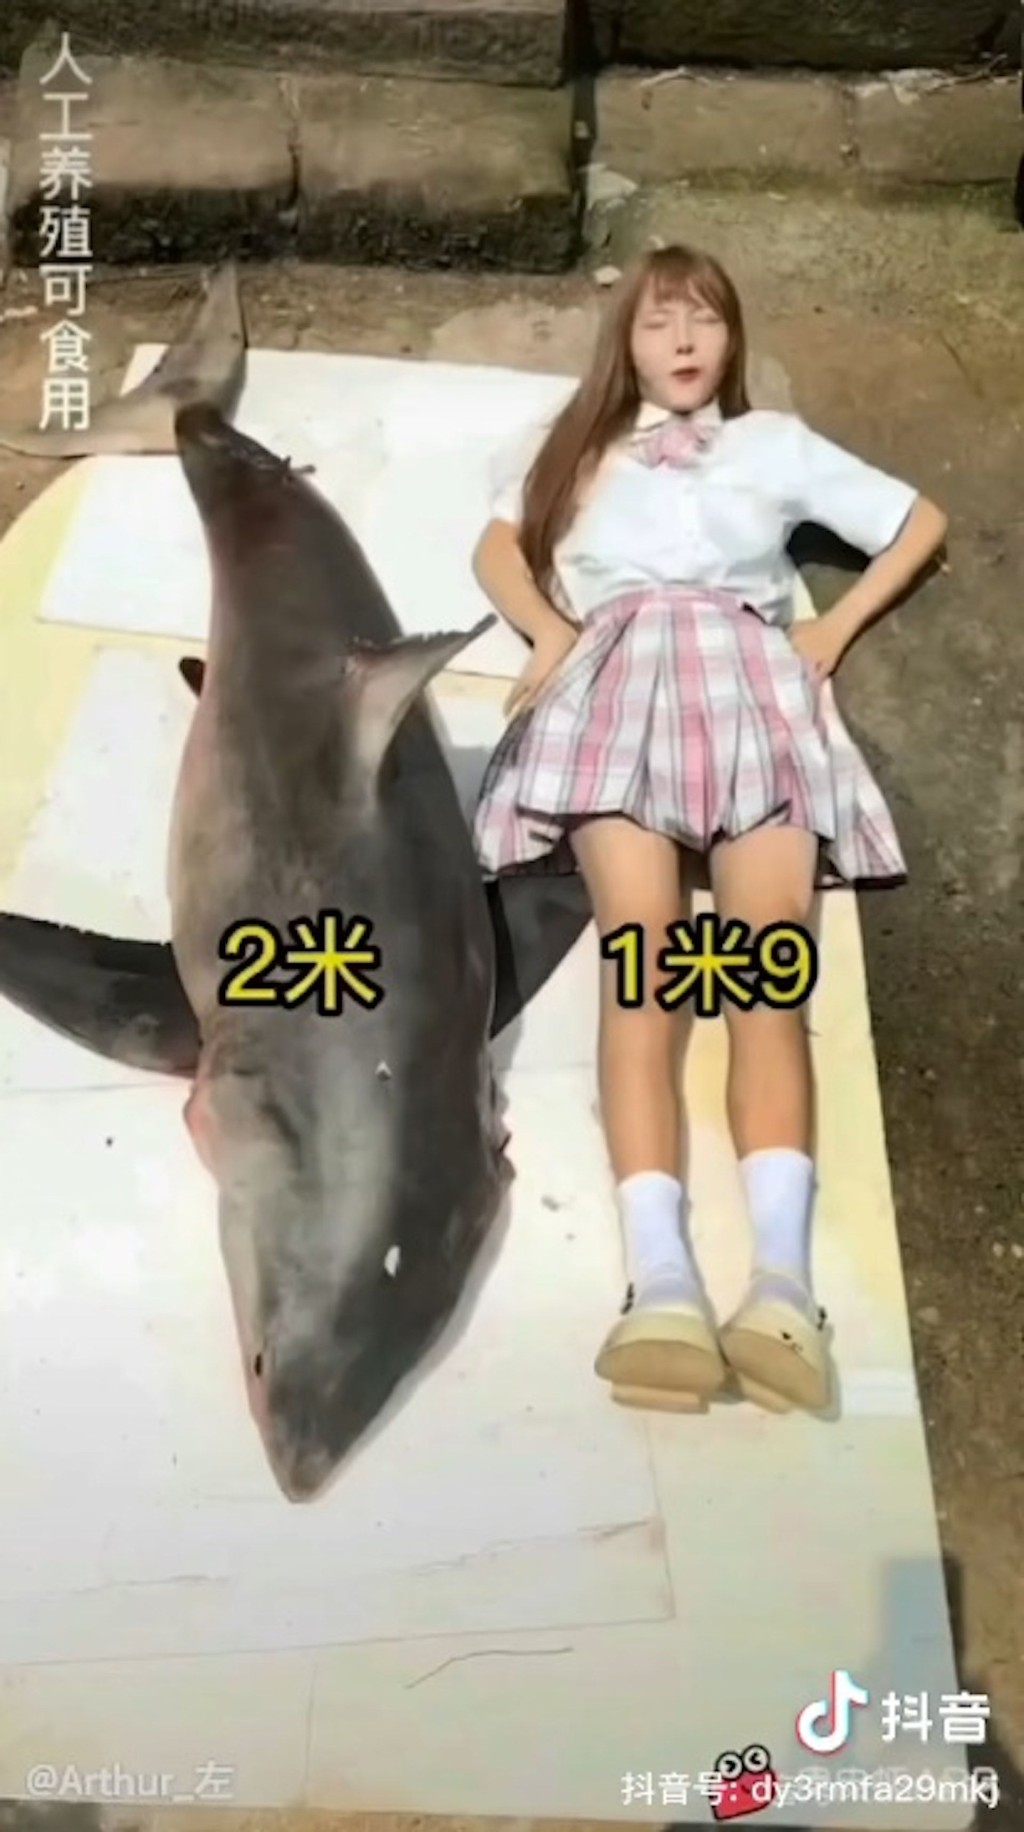 鯊魚身長約2米。